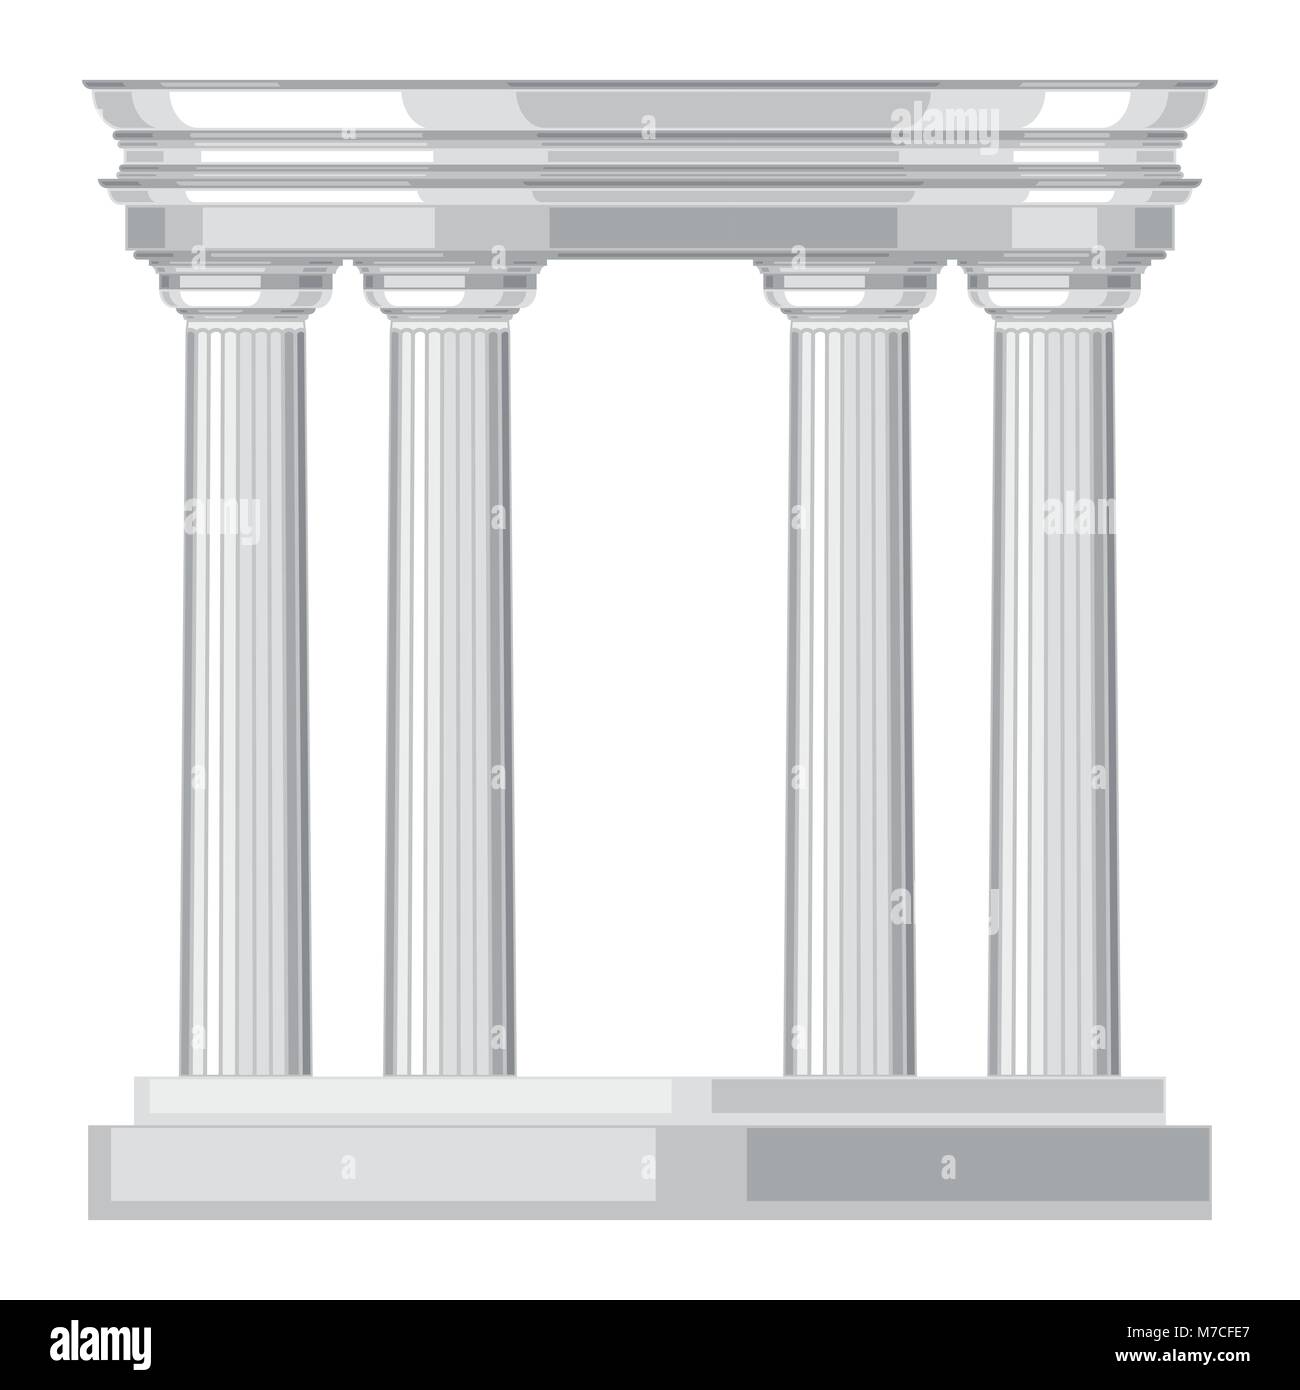 Realistico dorico antico tempio greco con colonne Illustrazione Vettoriale